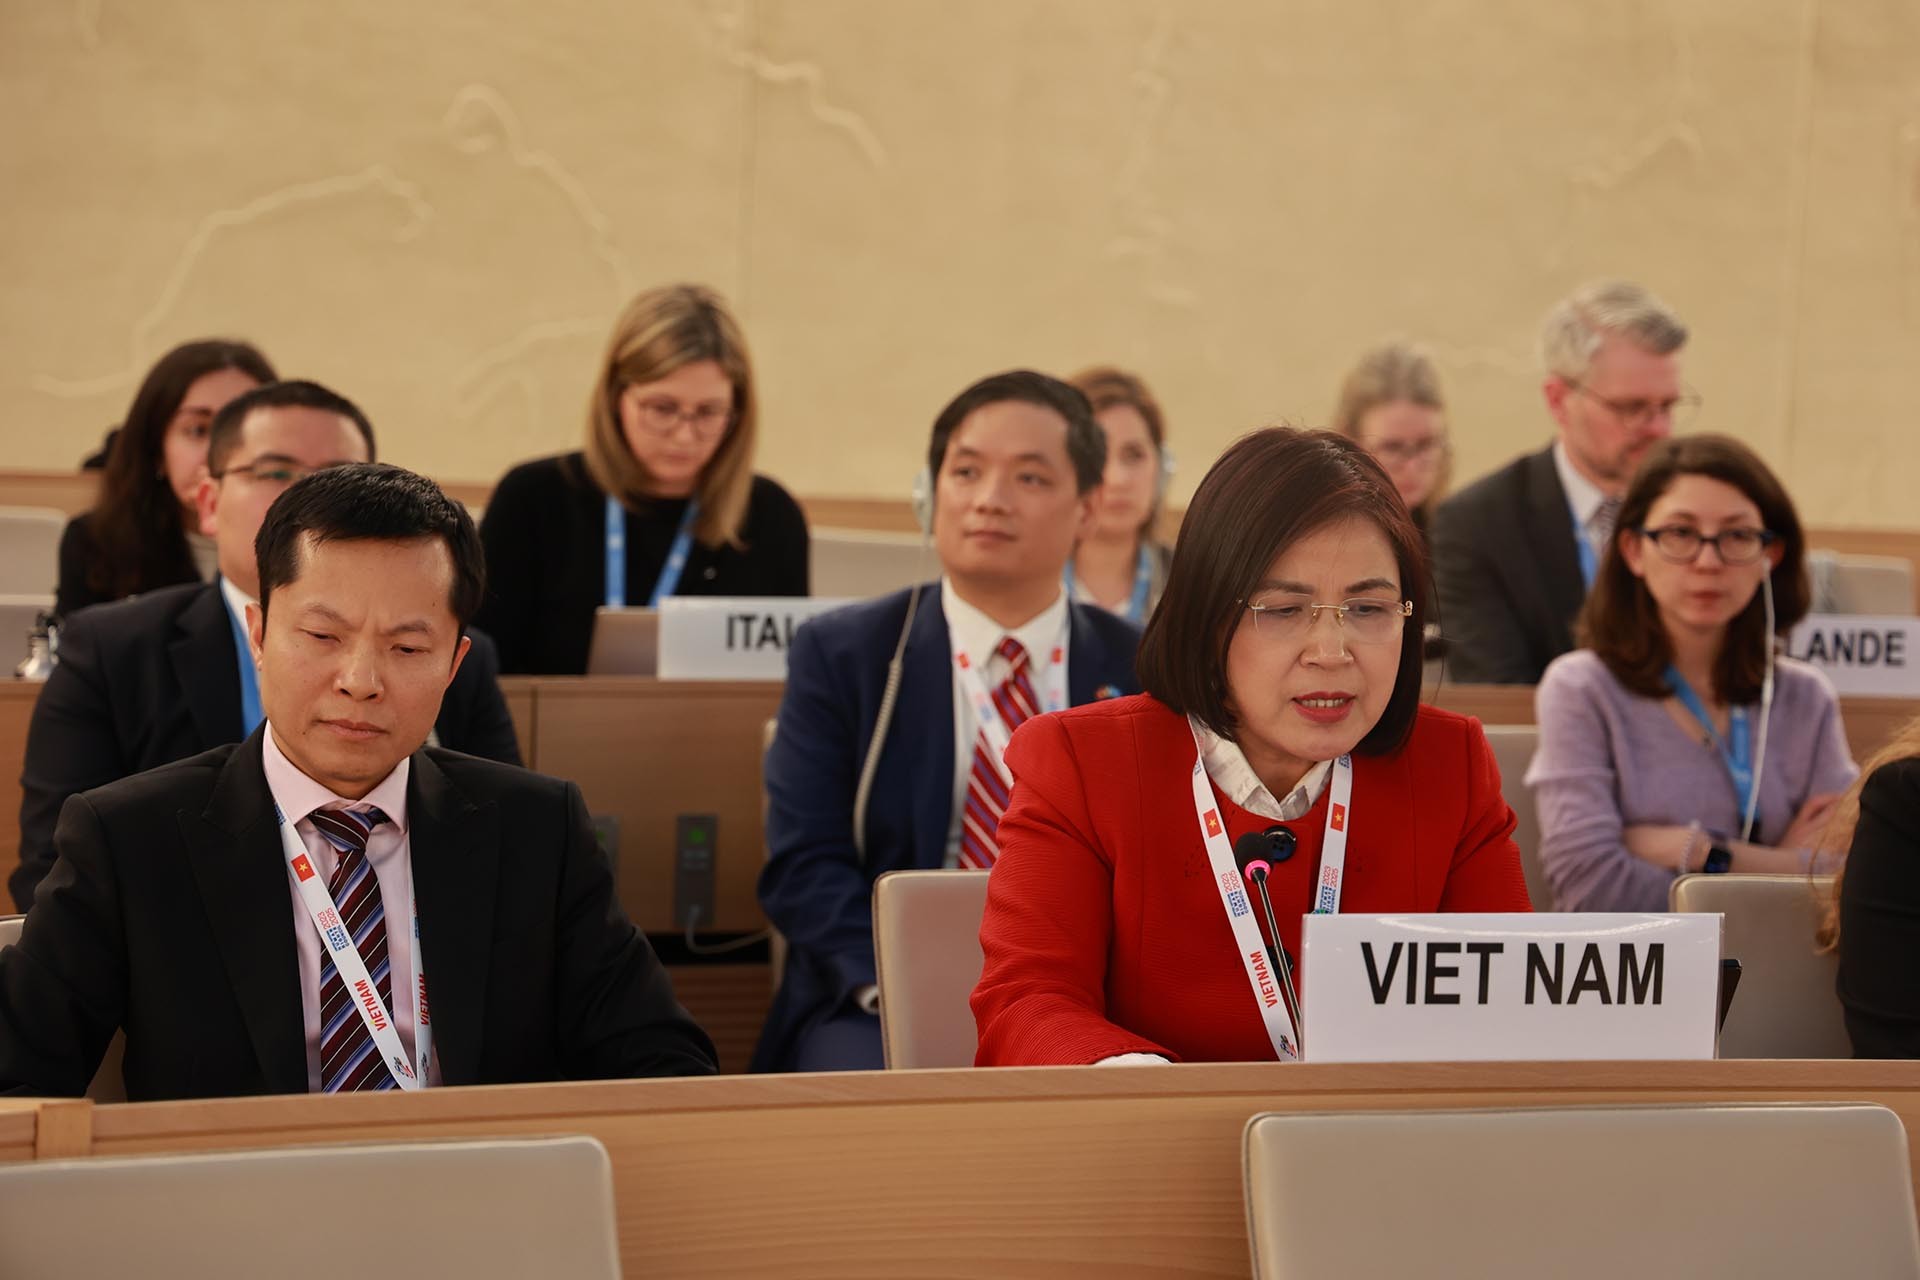 Đại sứ Lê Thị Tuyết Mai, Trưởng Phái đoàn đại diện thường trực Việt Nam bên cạnh LHQ, Tổ chức thương mại thế giới và các tổ chức quốc tế khác tại Geneva tham gia và phát biểu tại phiên họp.